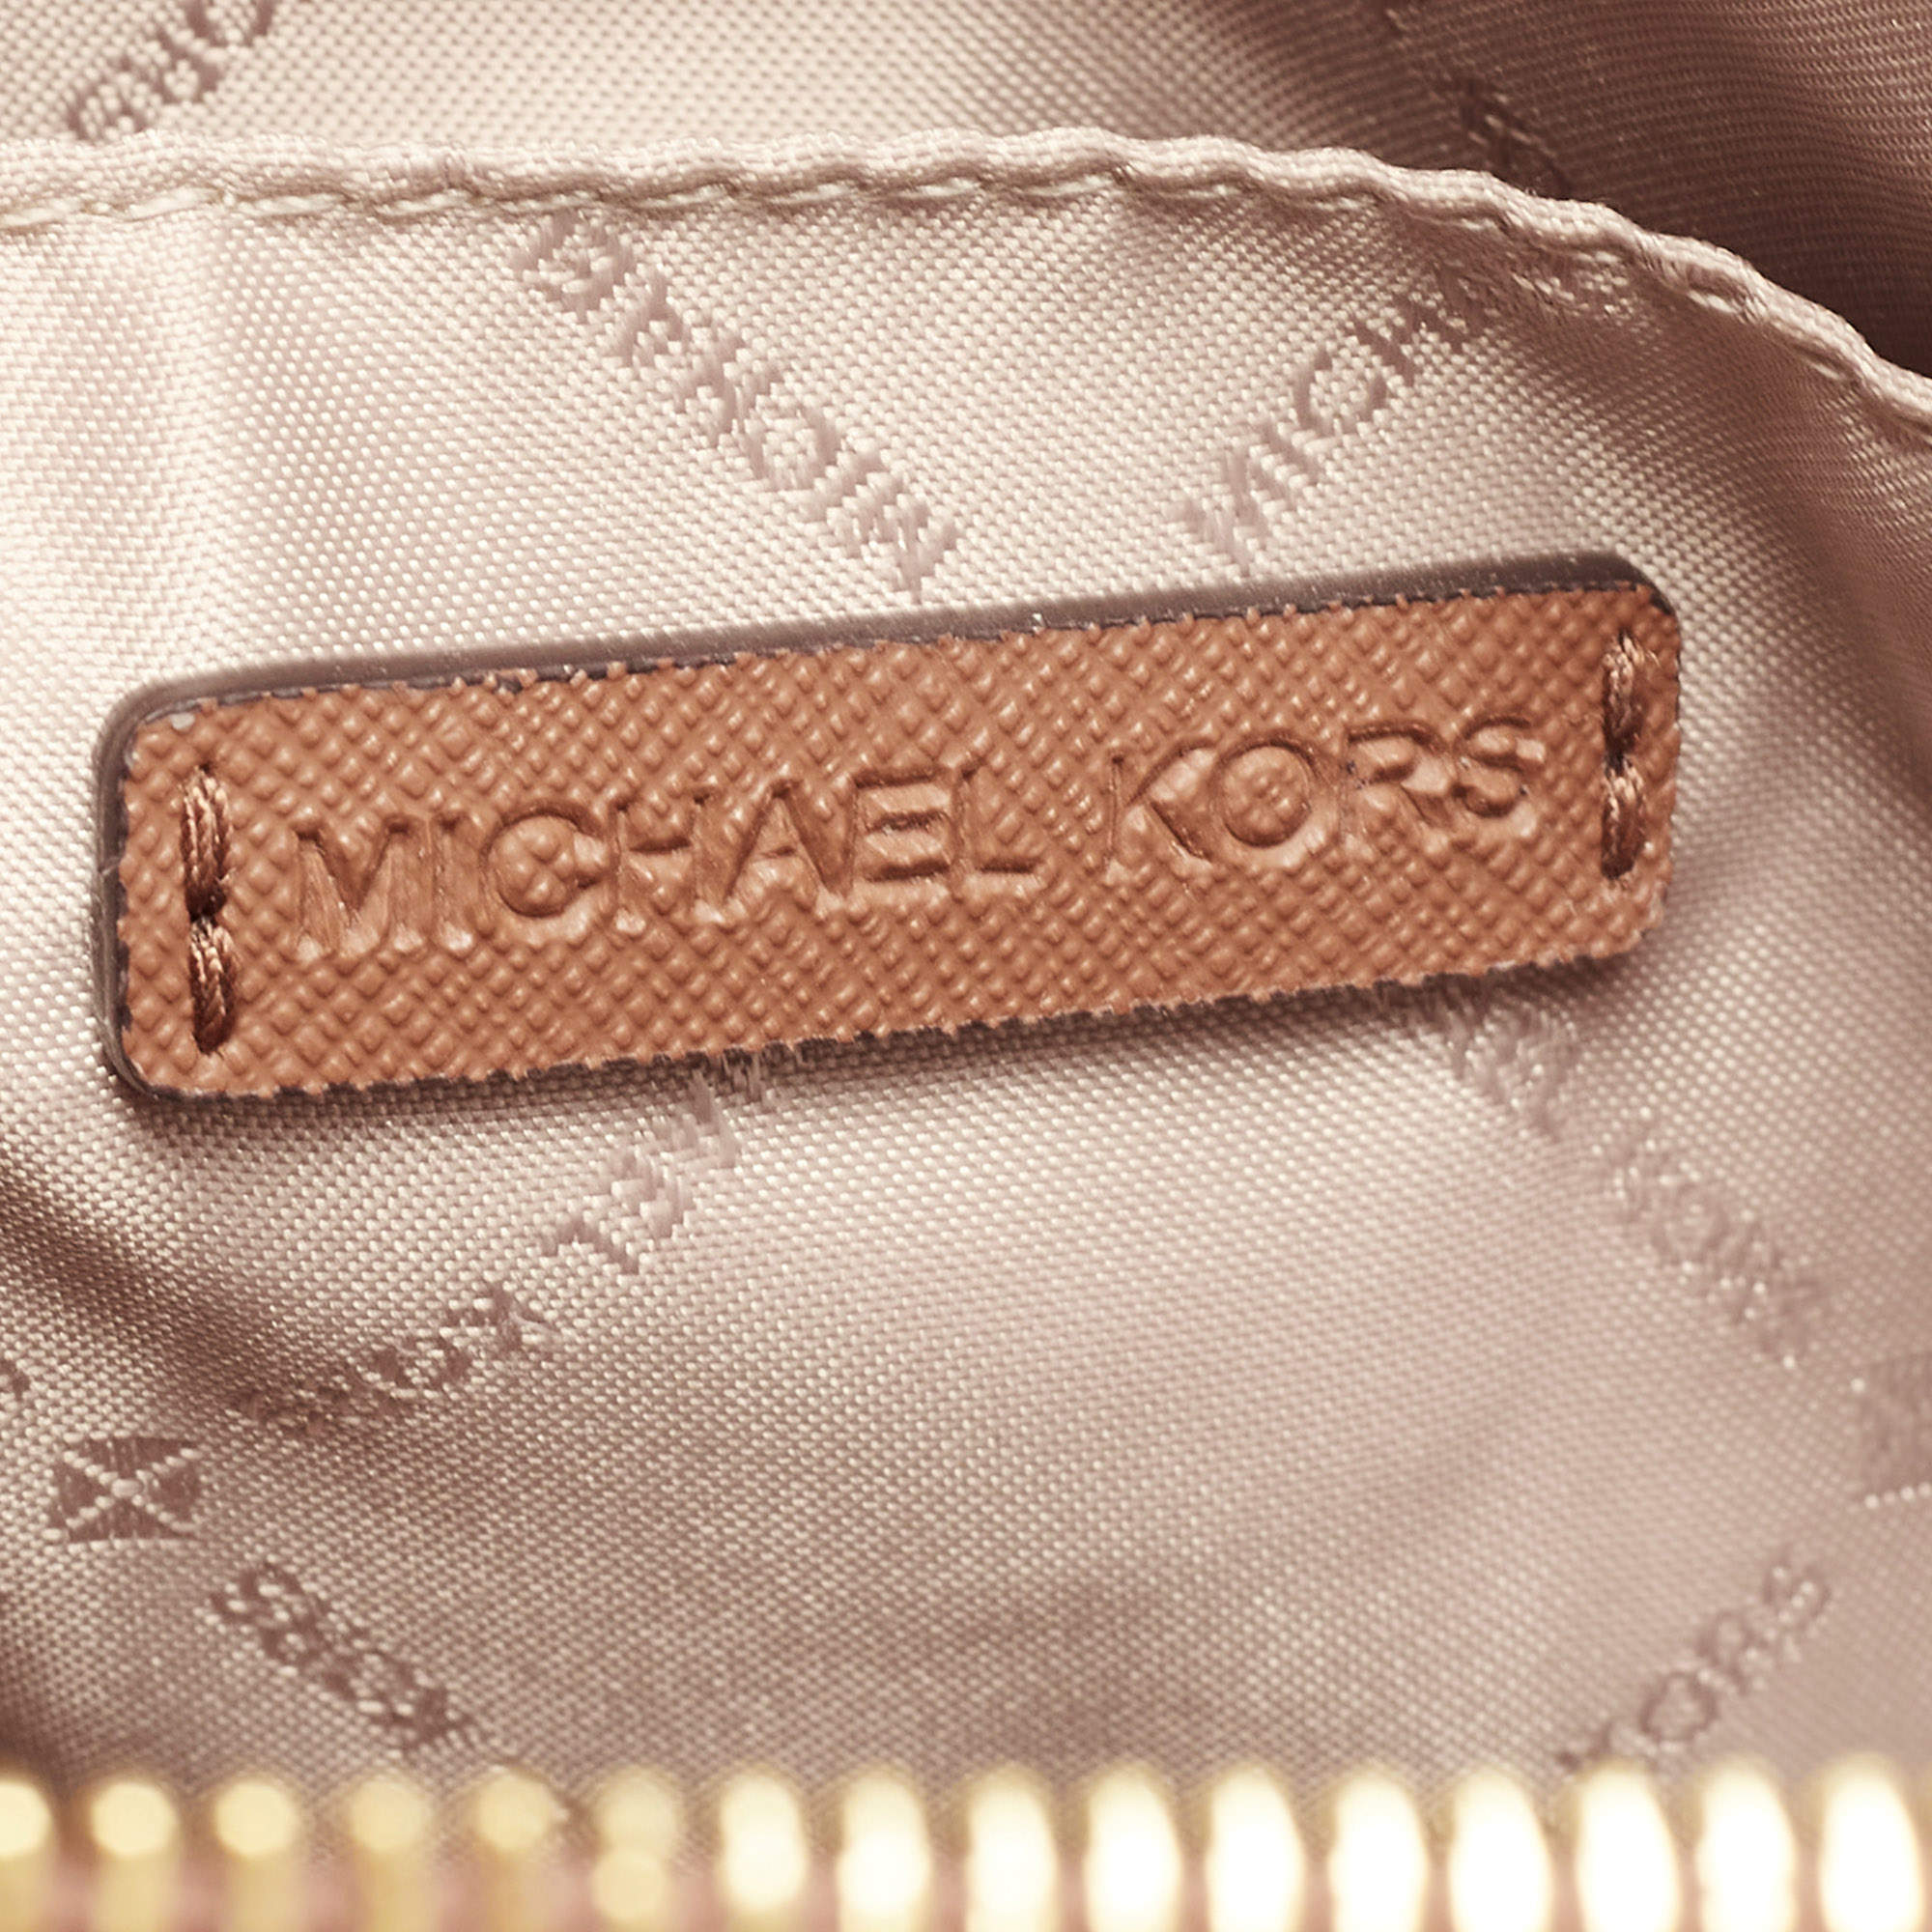 Buy Michael Kors Women Brown Signature MK Dome Crossbody Bag Online -  914007